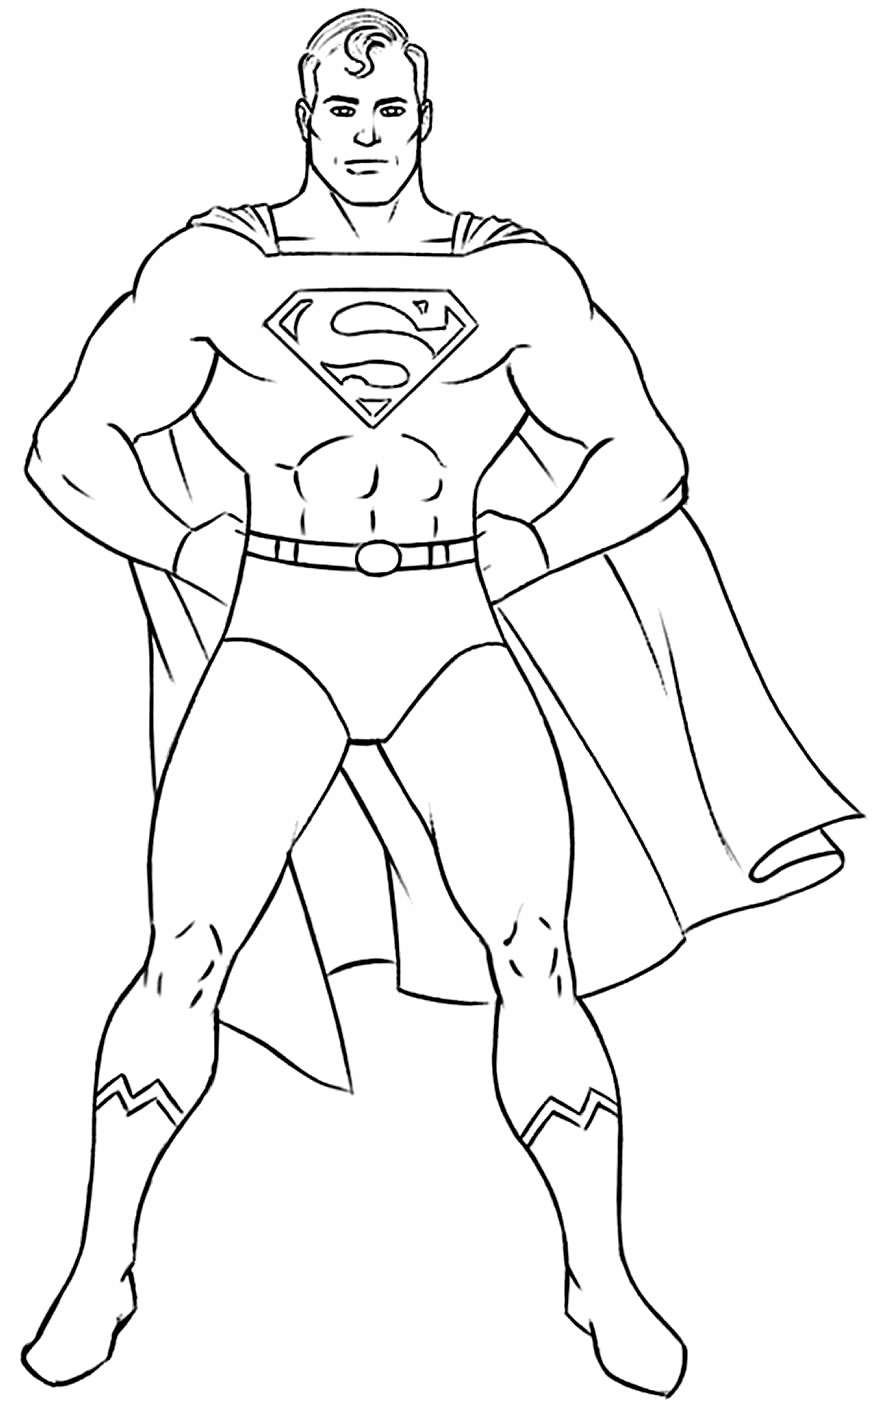 Imagem do Super-Homem para pintar